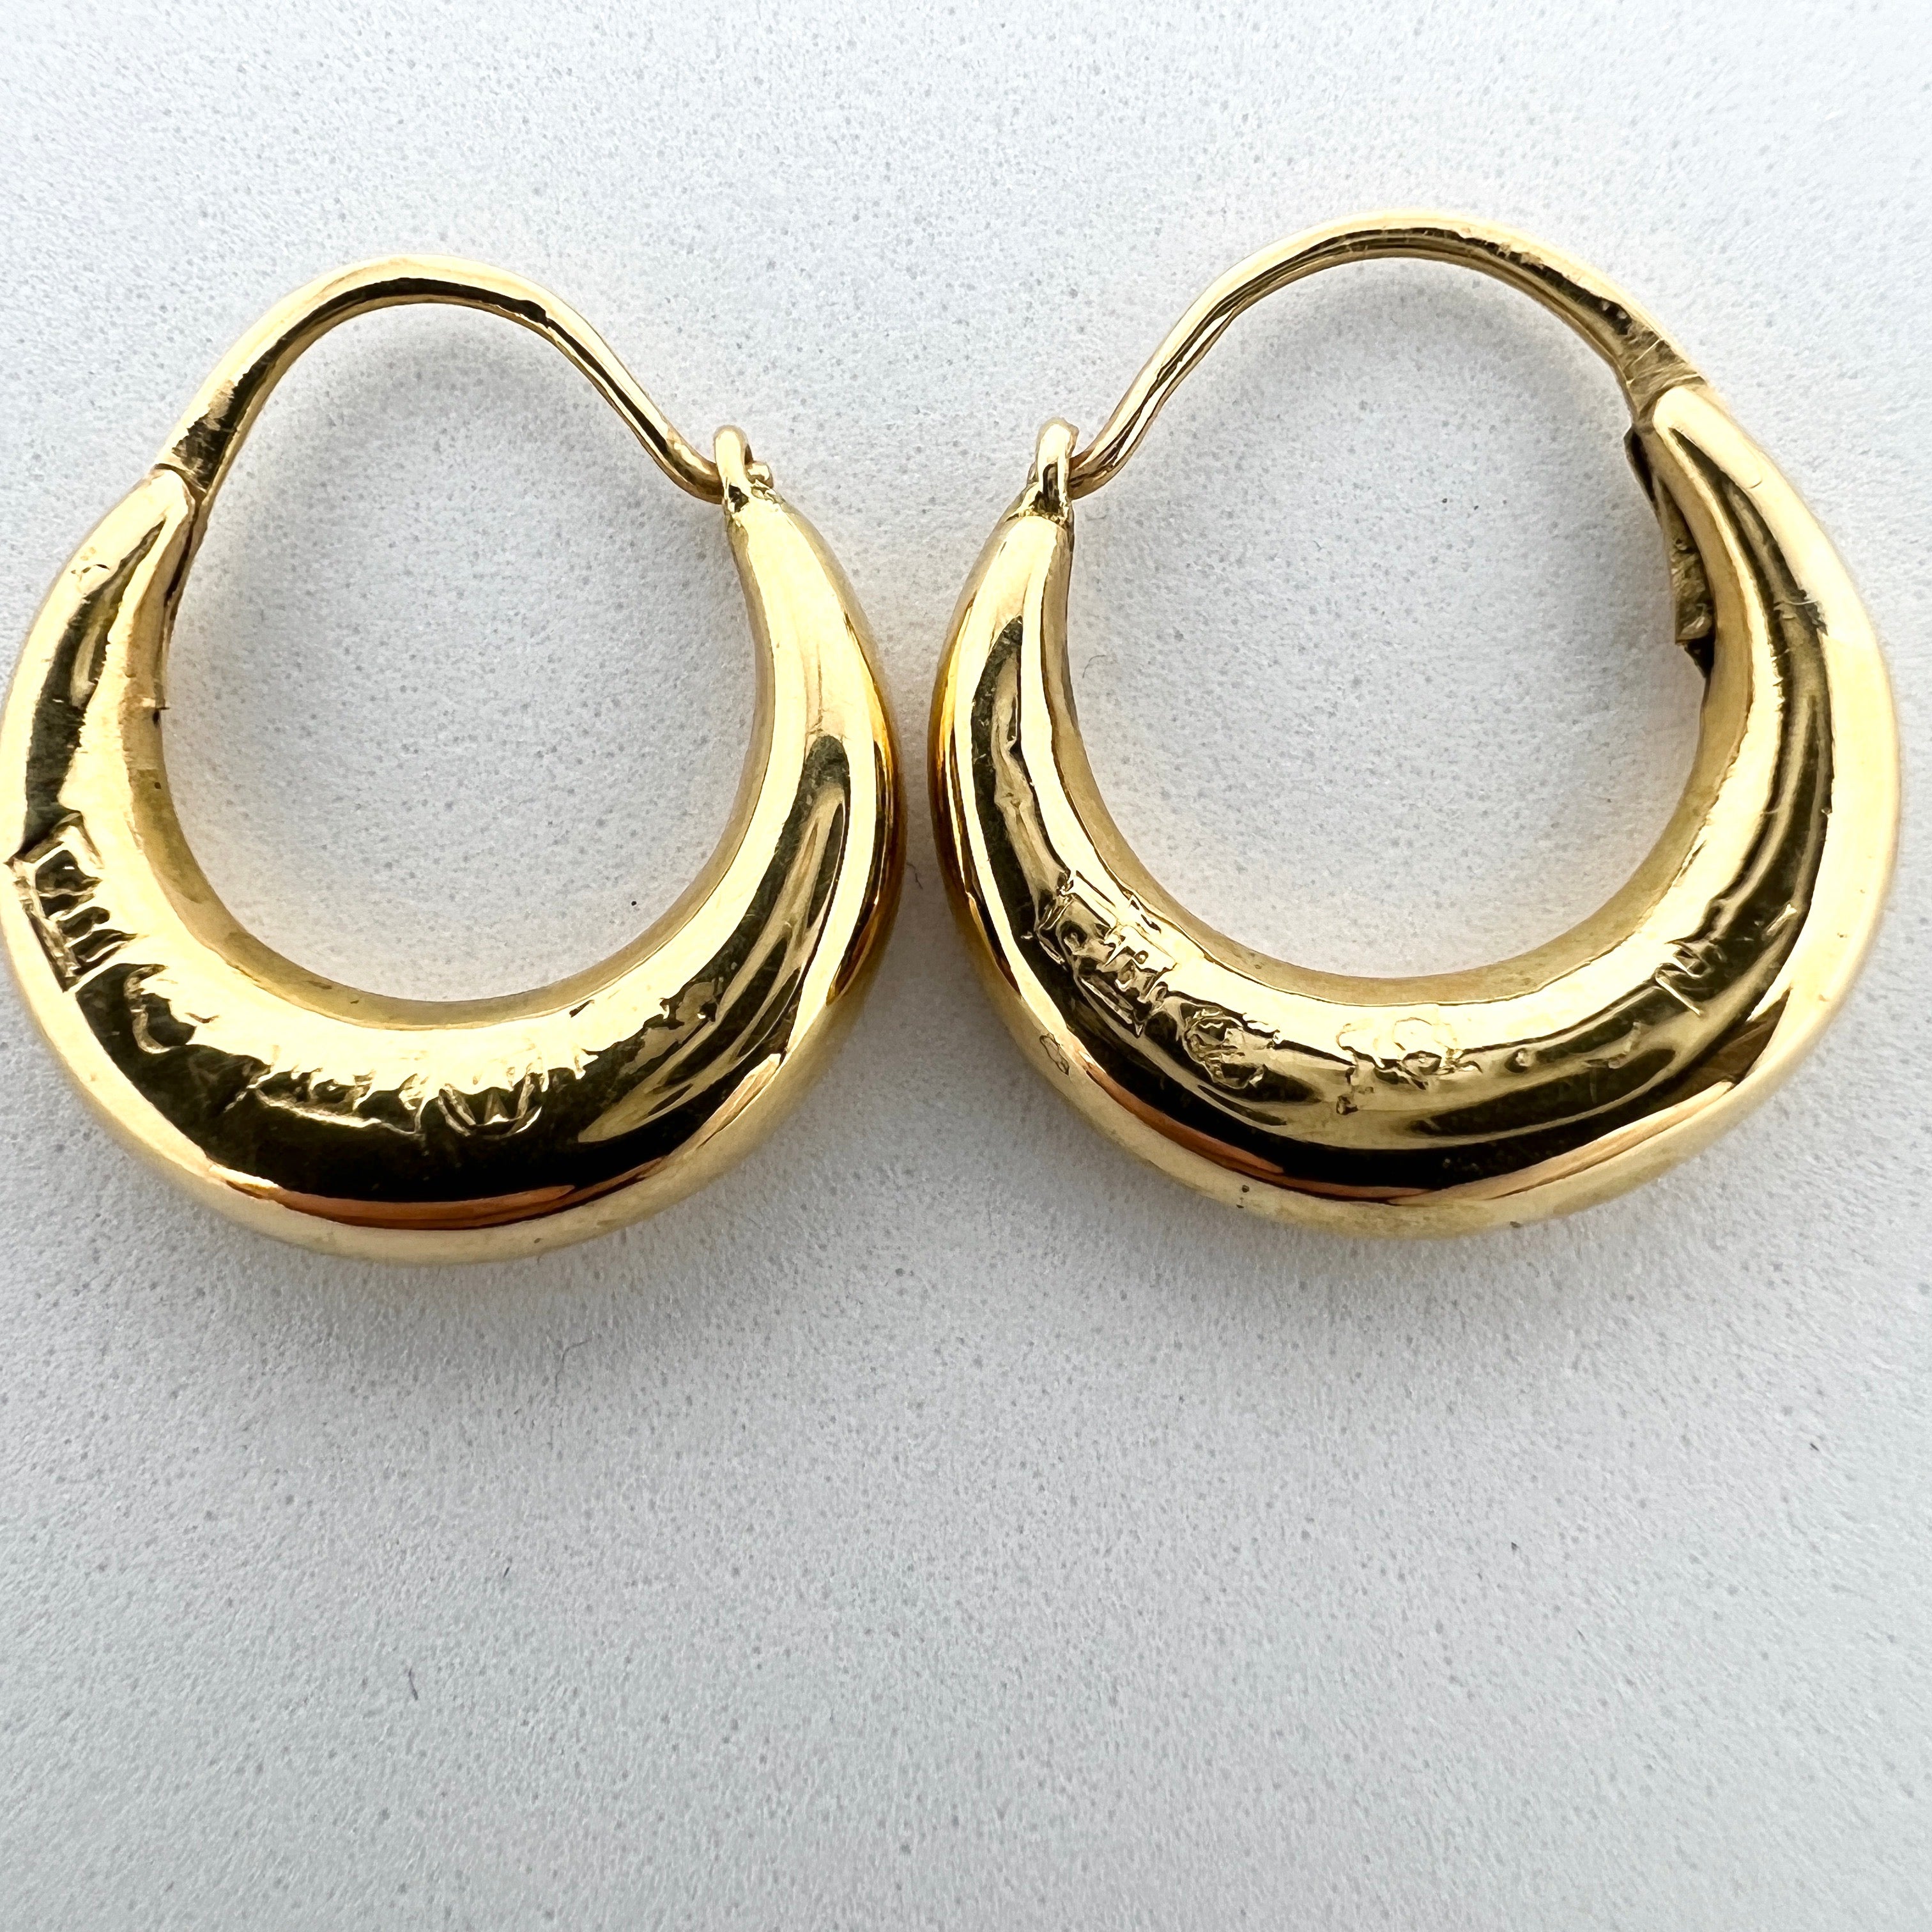 Frans Holm, Sweden 1868. Antique Victorian 18k Gold Earrings.